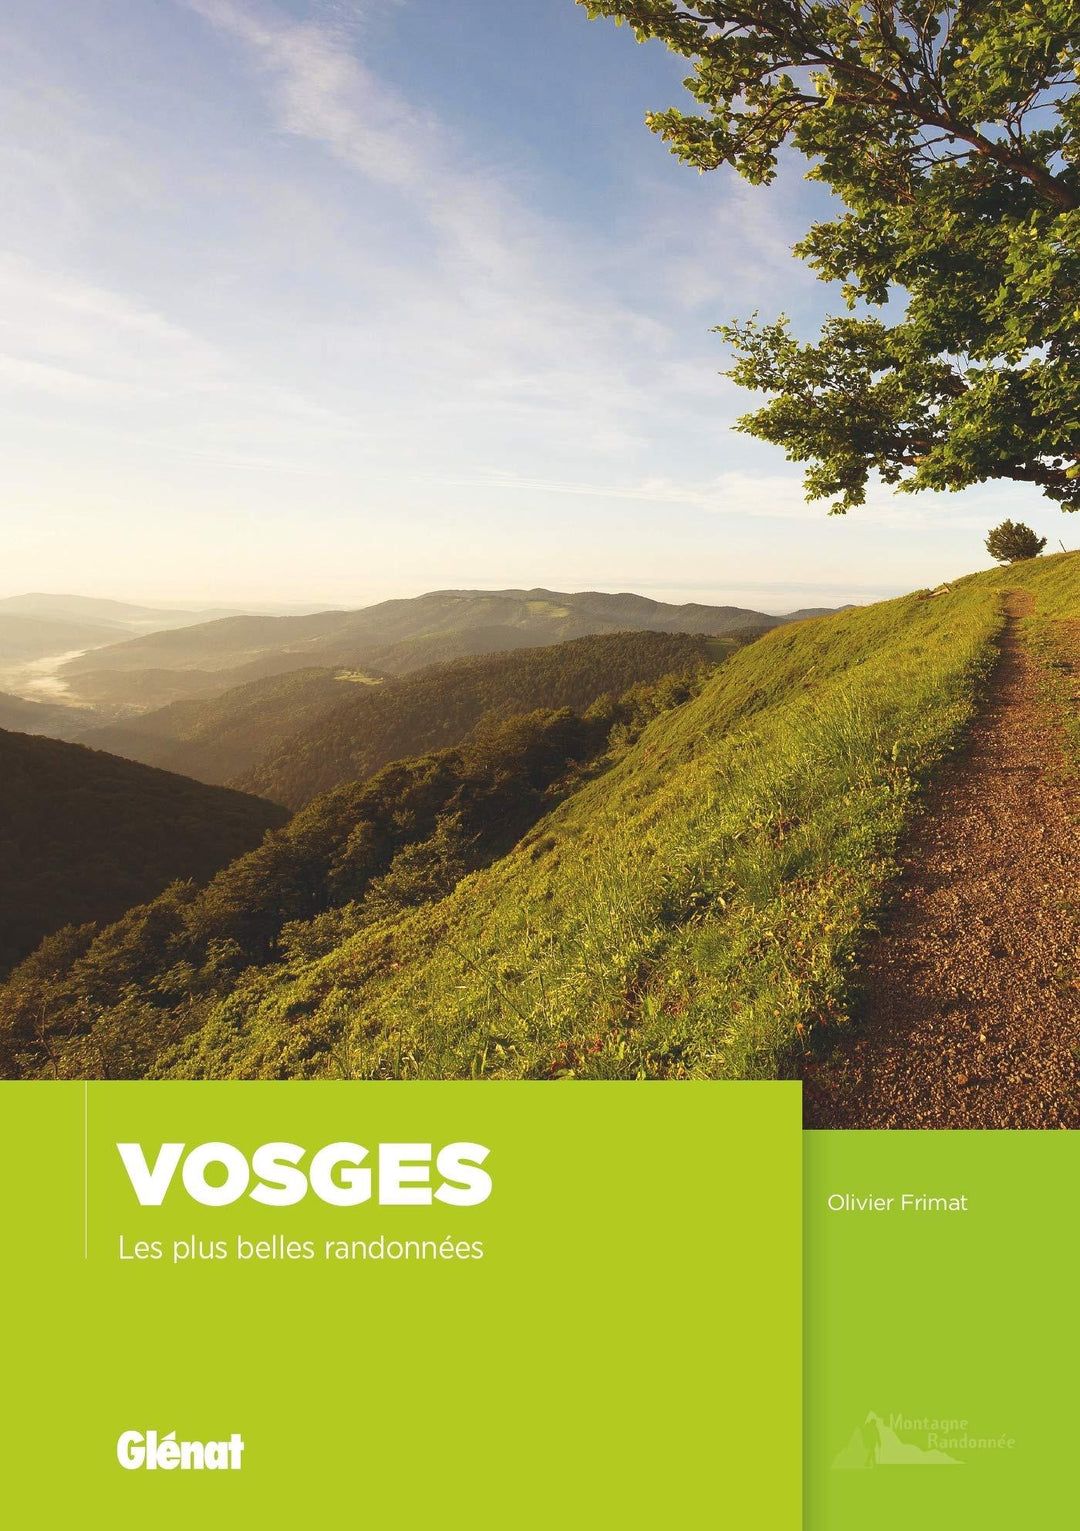 Guide de randonnées - Vosges, Les plus belles randonnées | Glénat guide de randonnée Glénat 